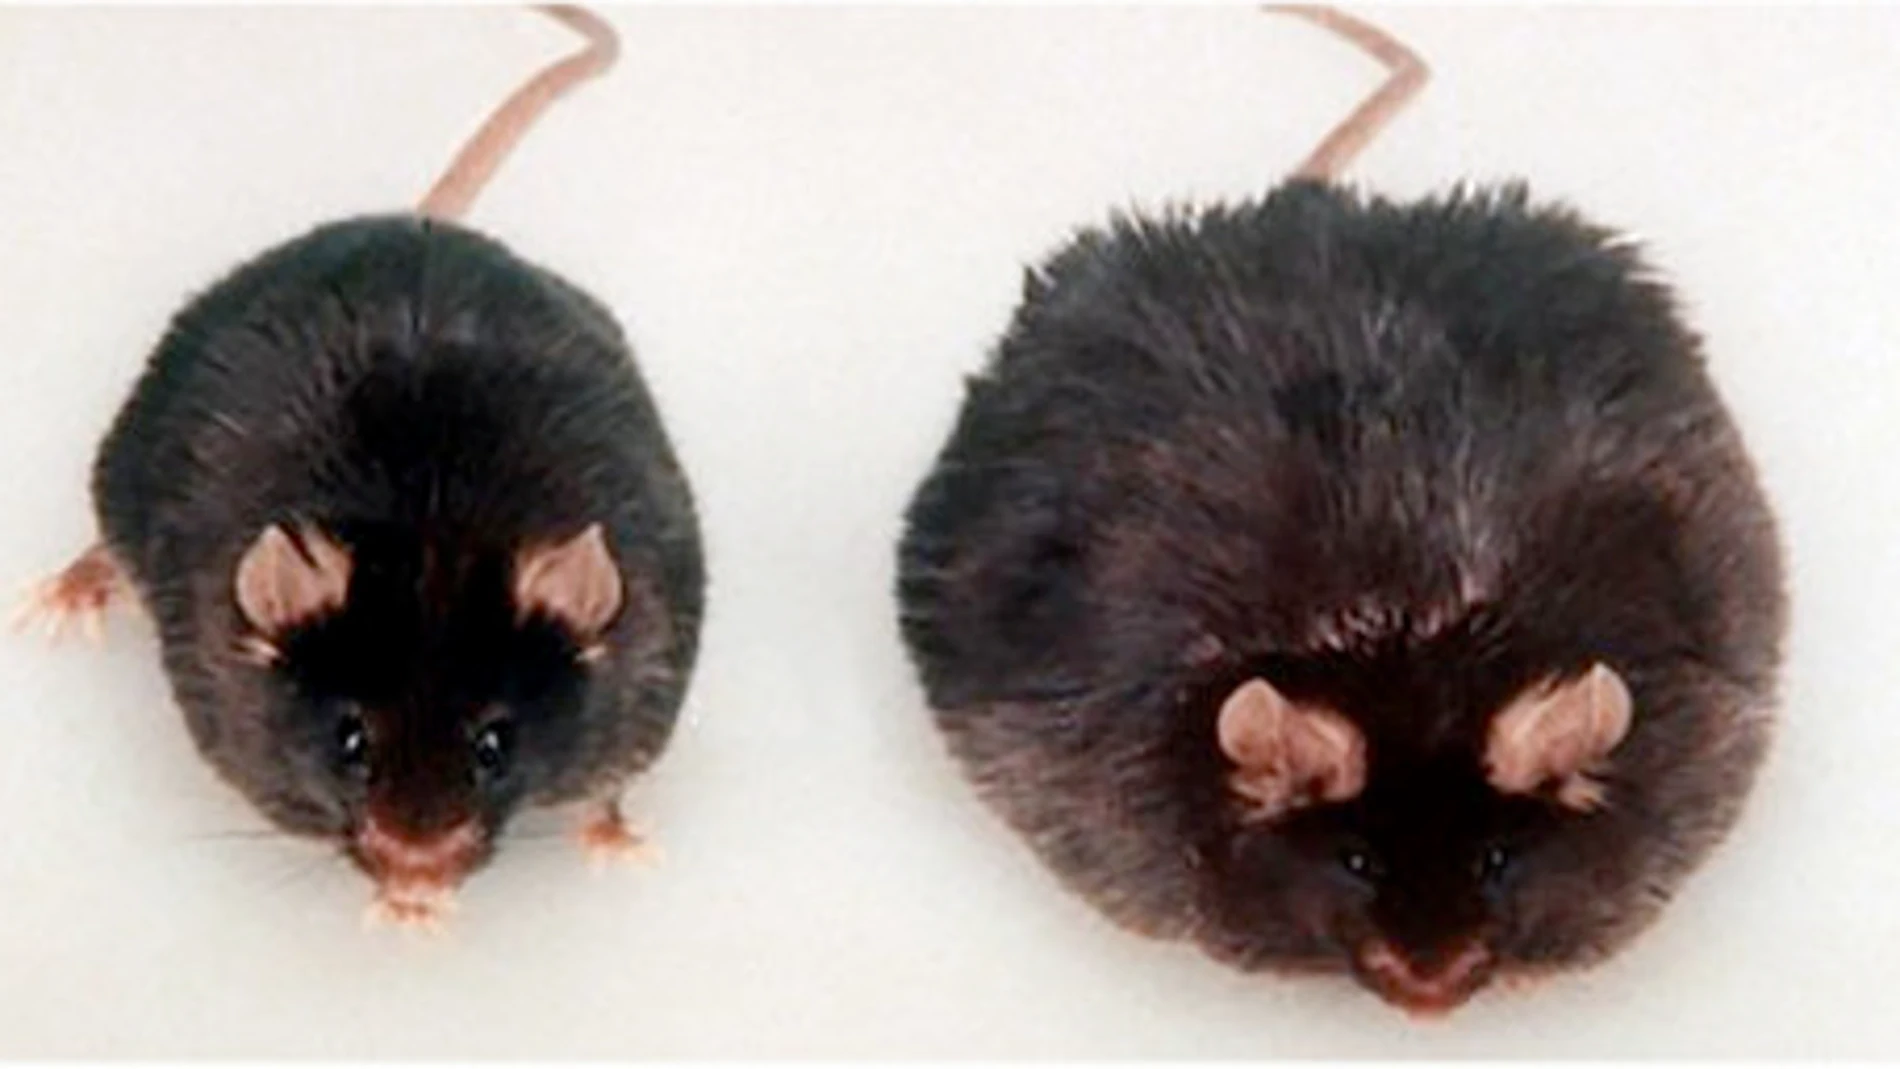 Una rata Zucker similar a la empleada para este estudio, y que constituye uno de los modelos genéticos de obesidad mejor caracterizados